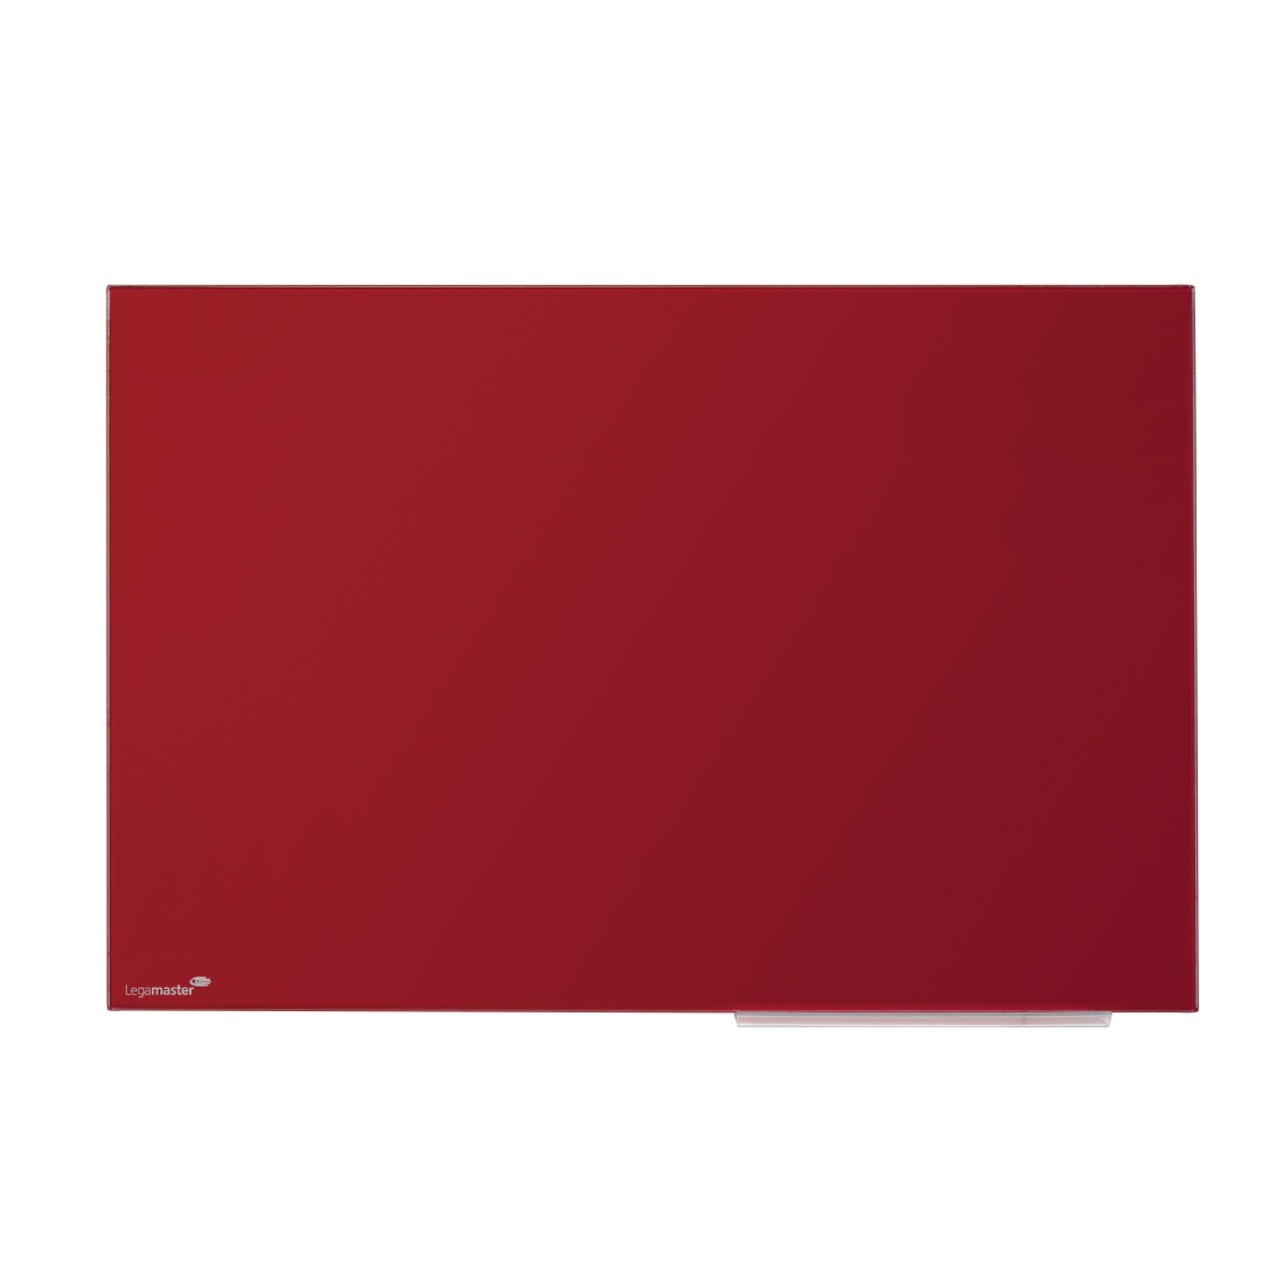 Glass Board 90 x 120 cm röd